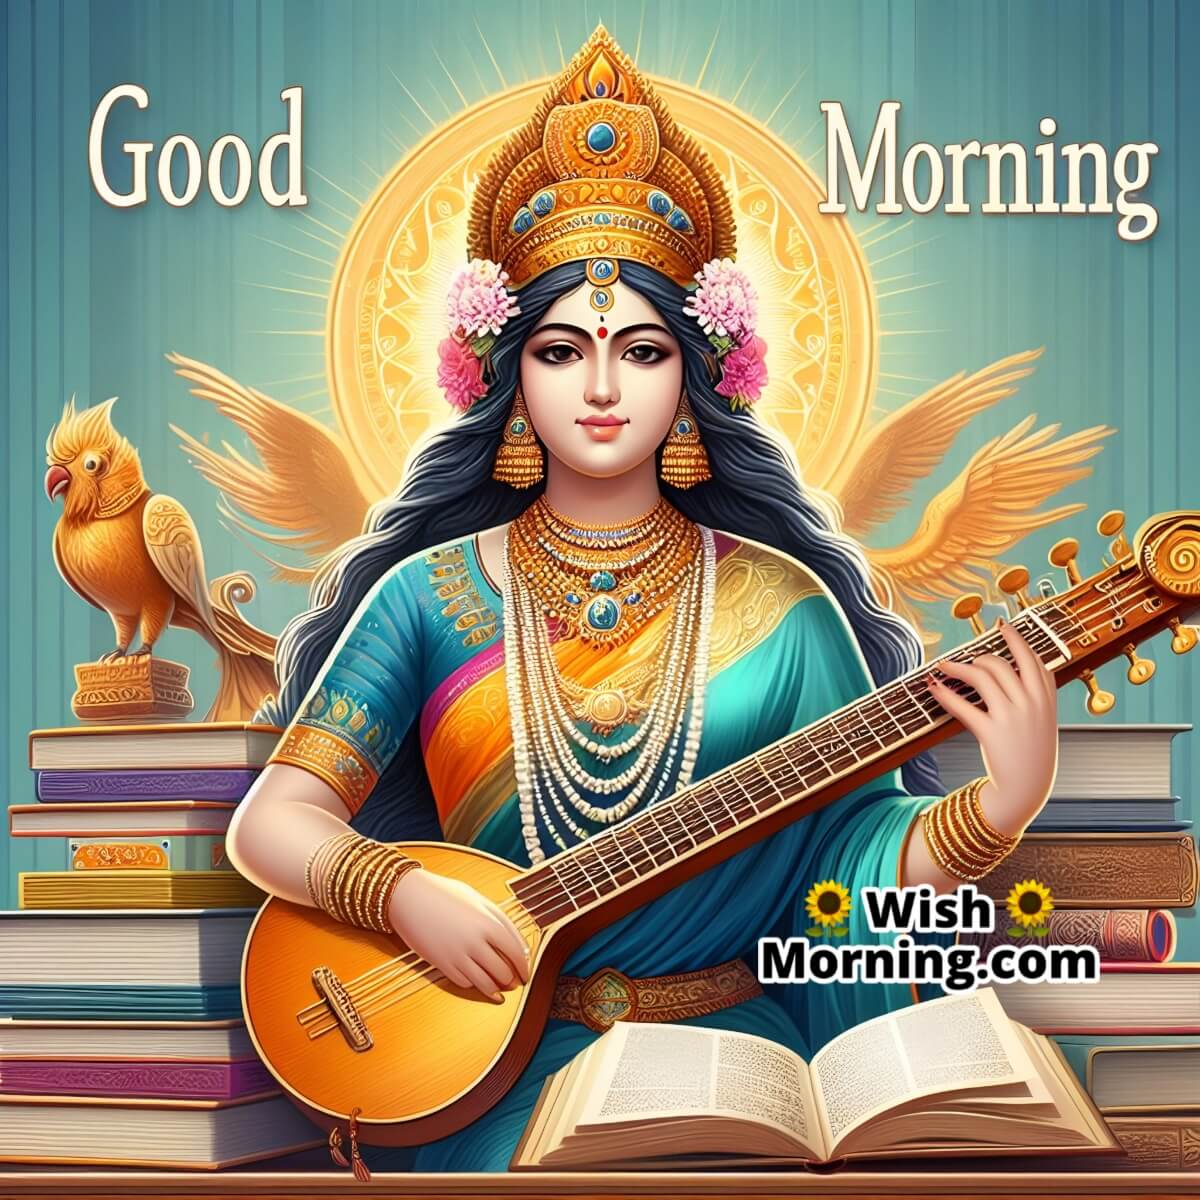 Morning Blessings From Saraswati Devi